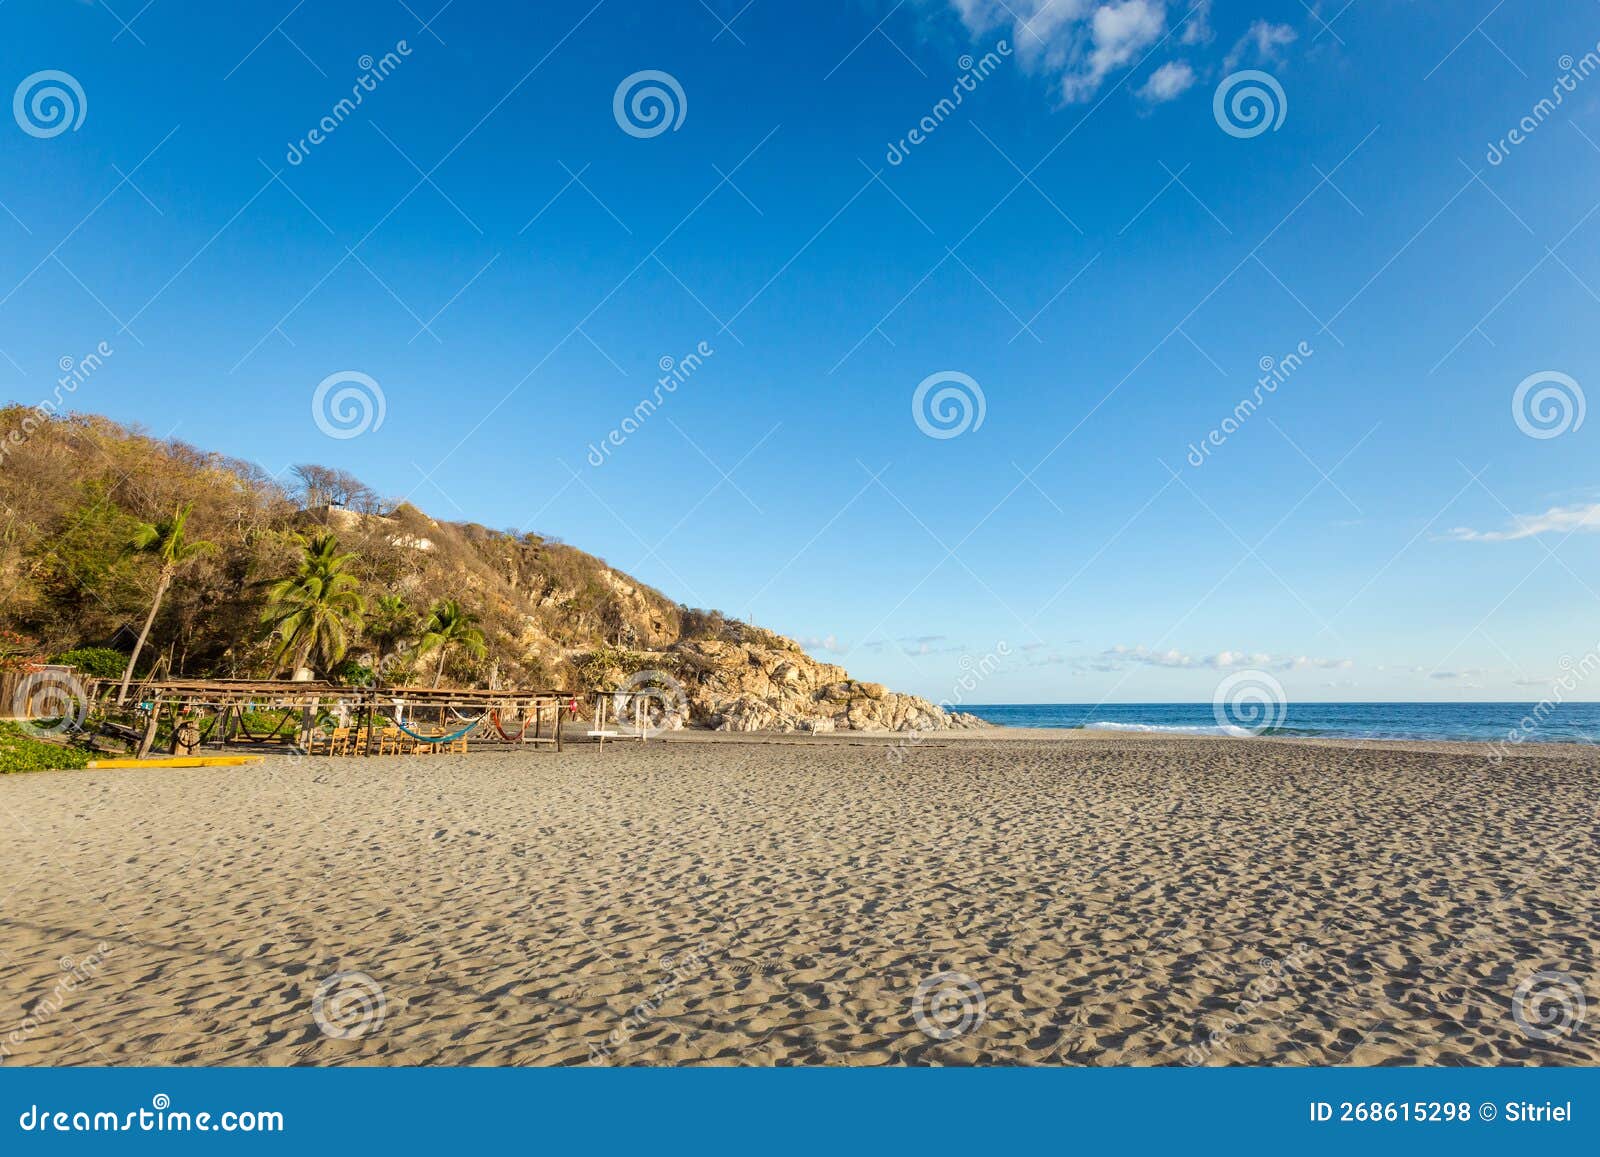 beautiful ventanilla beach in mexico